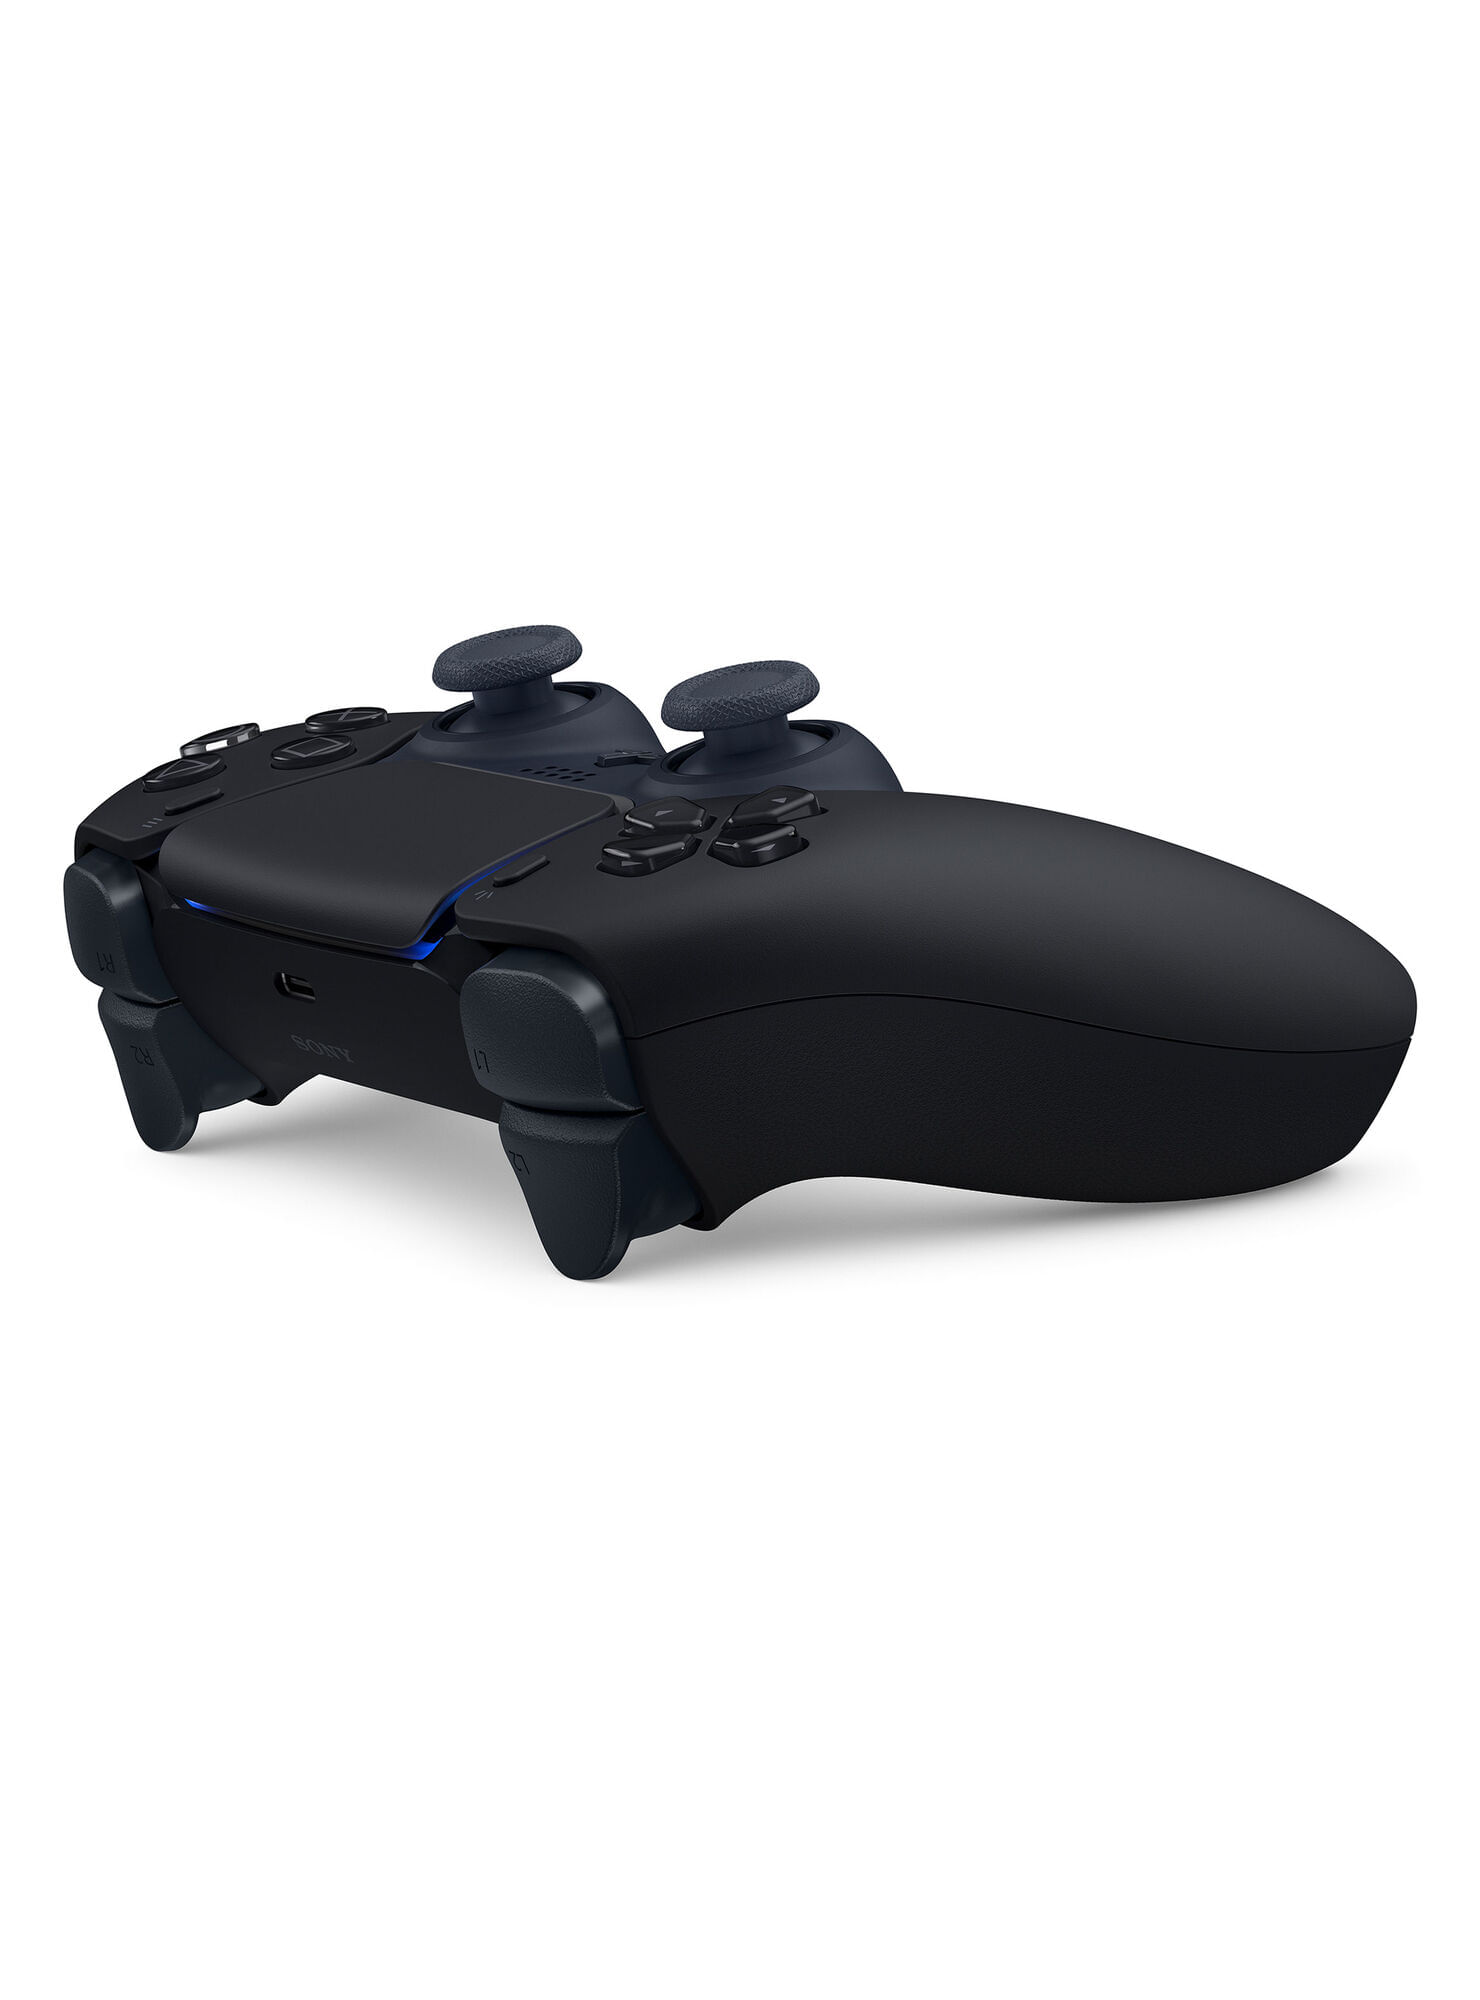 Controlador inalámbrico Sony DualSense para la PlayStation 5, controlador  de juego inalámbrico e intuitivo